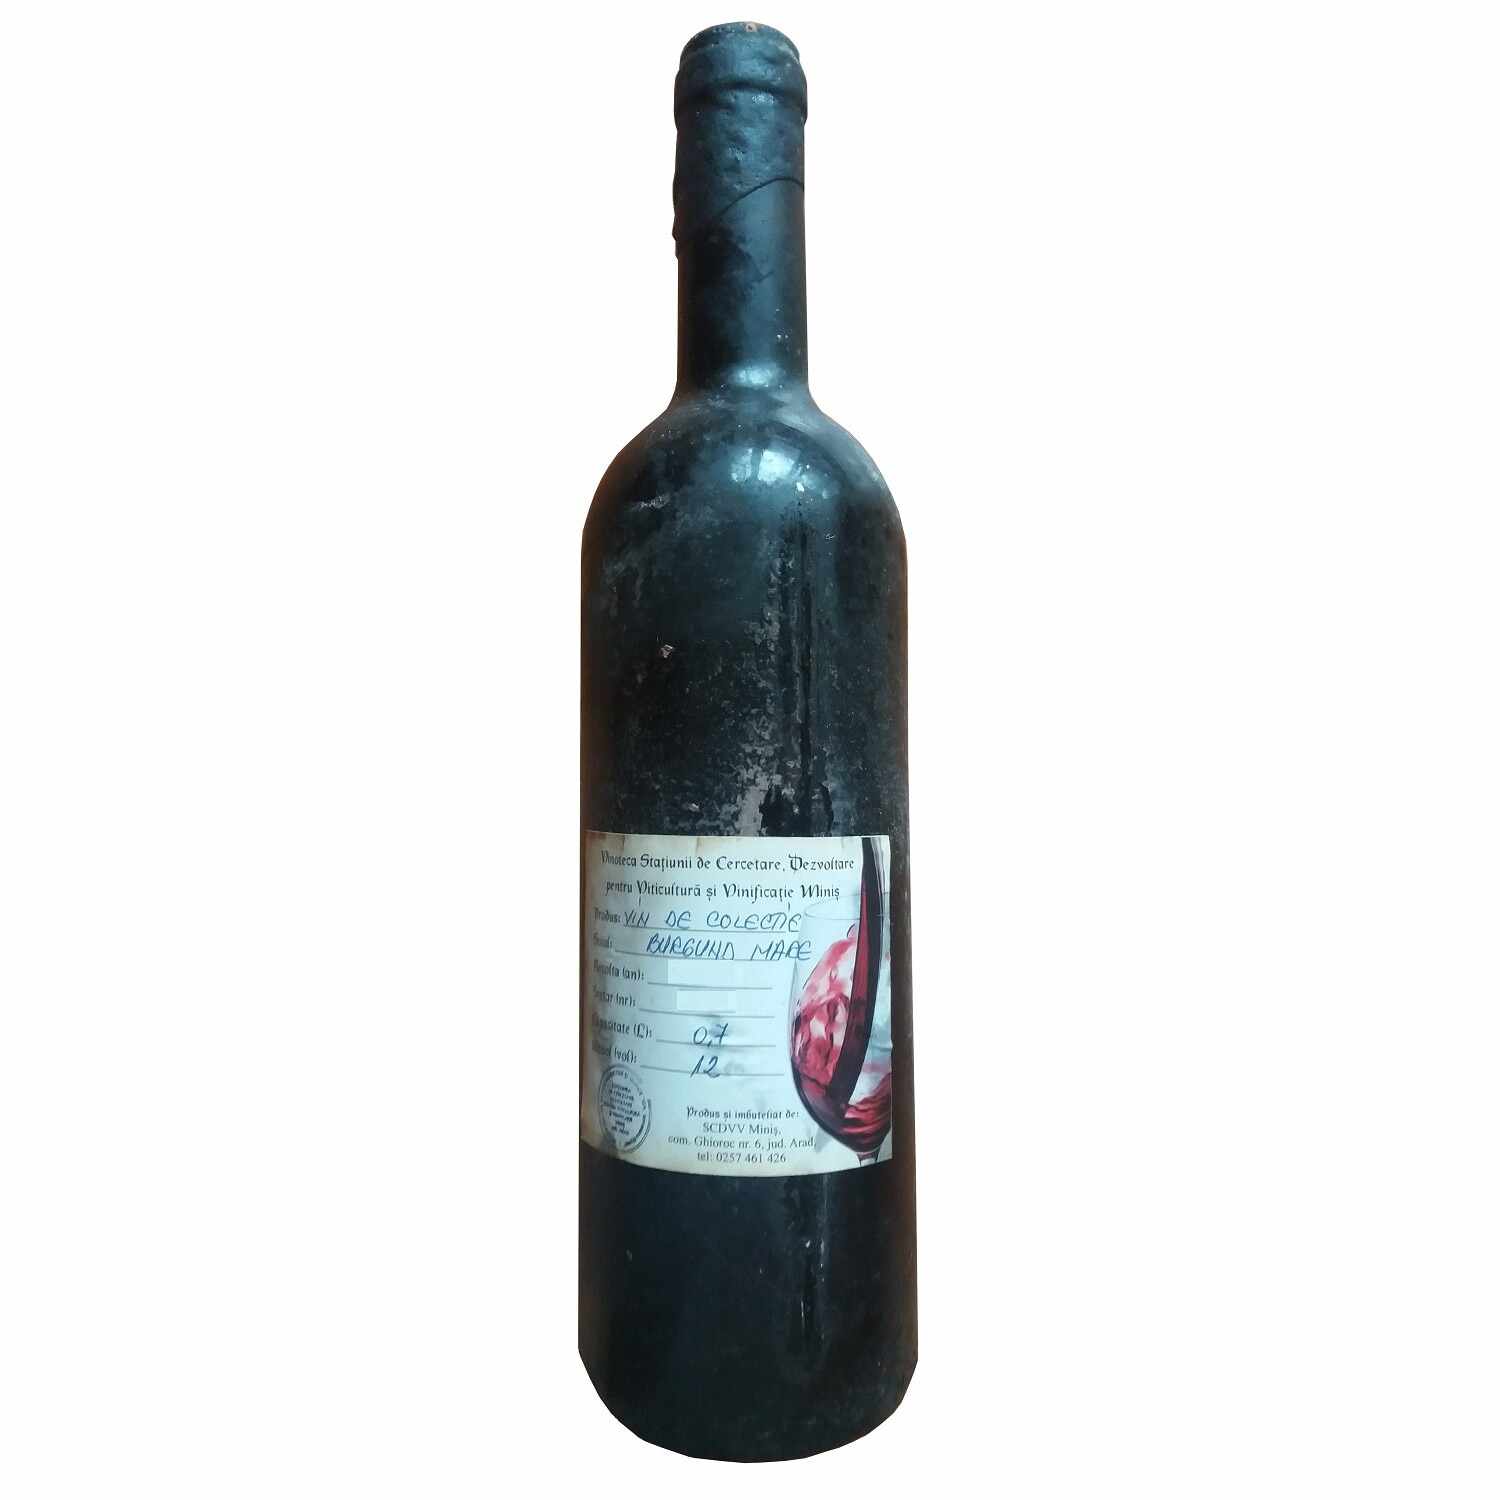 Vin de colectie Minis Burgund 1999 rosu, in cutie lemn, 0.7L